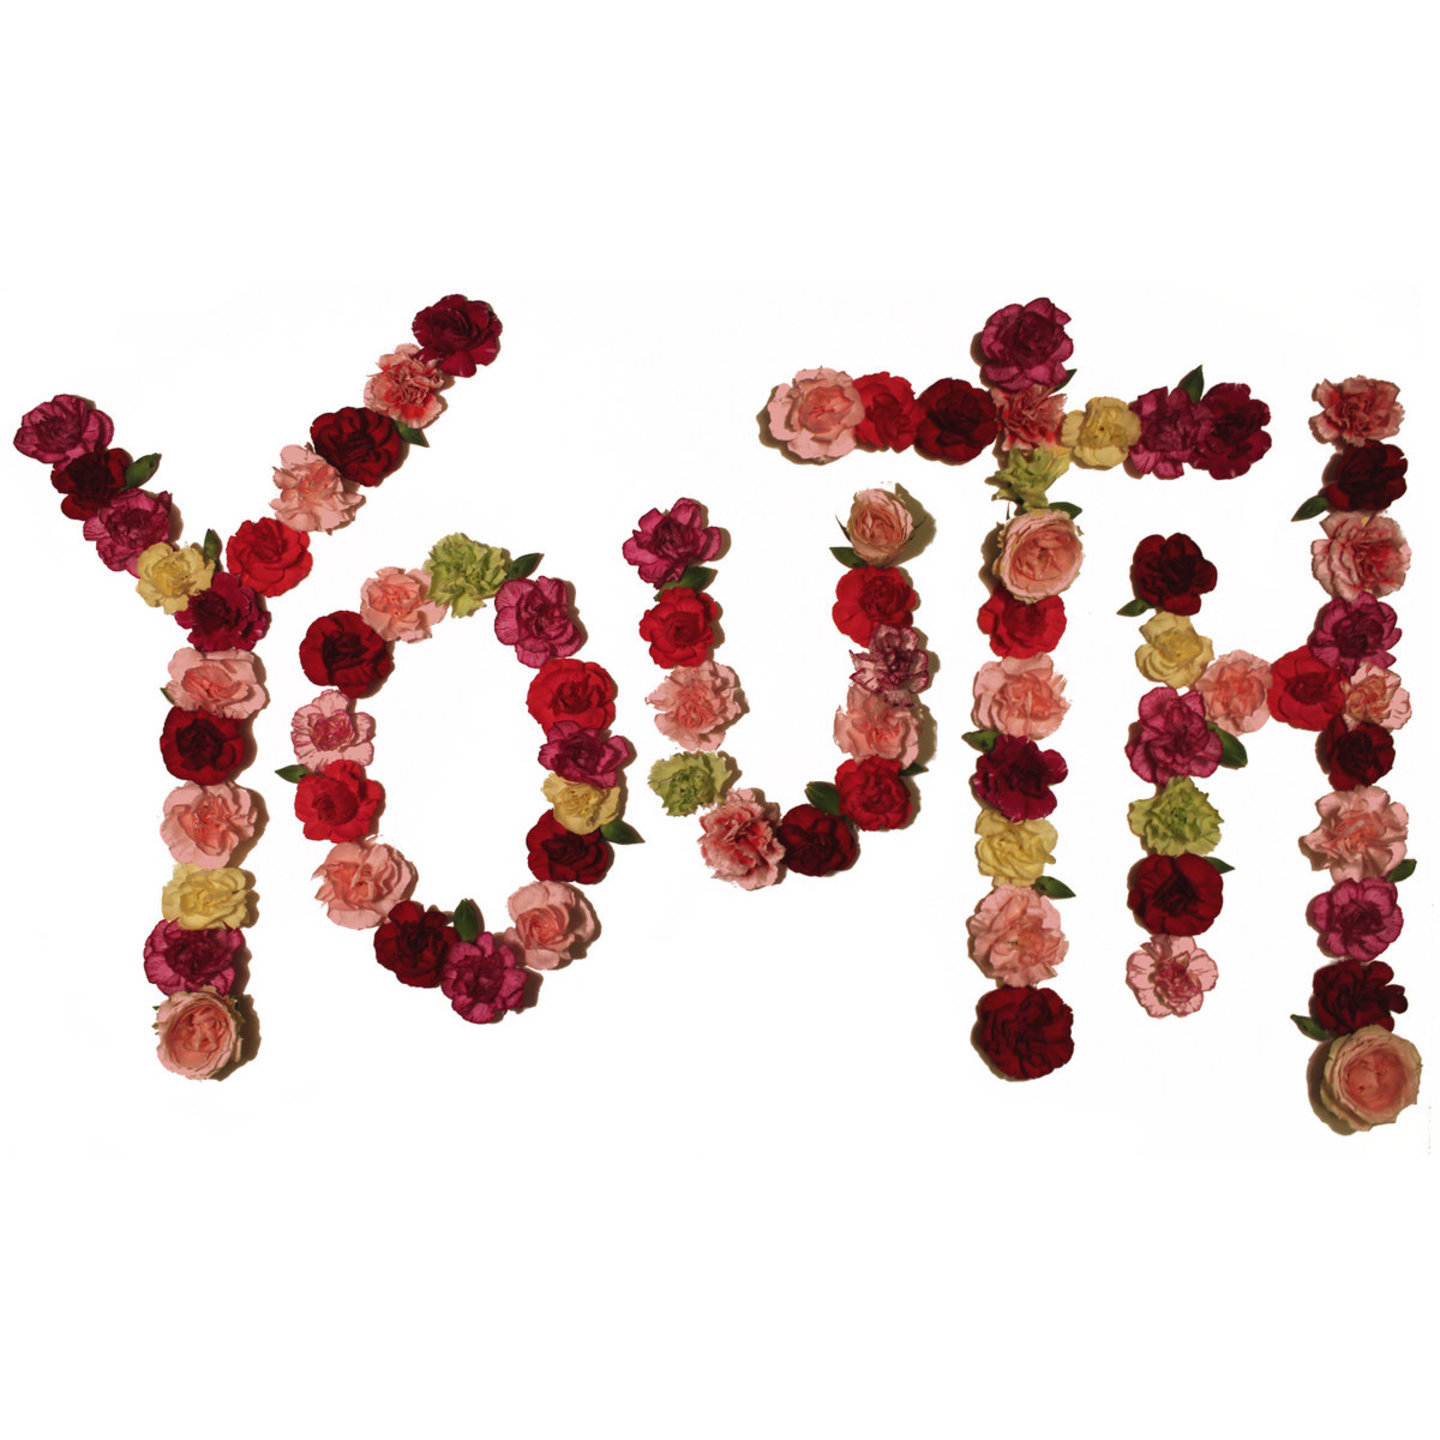 CITIZEN - Youth LP Colour Vinyl